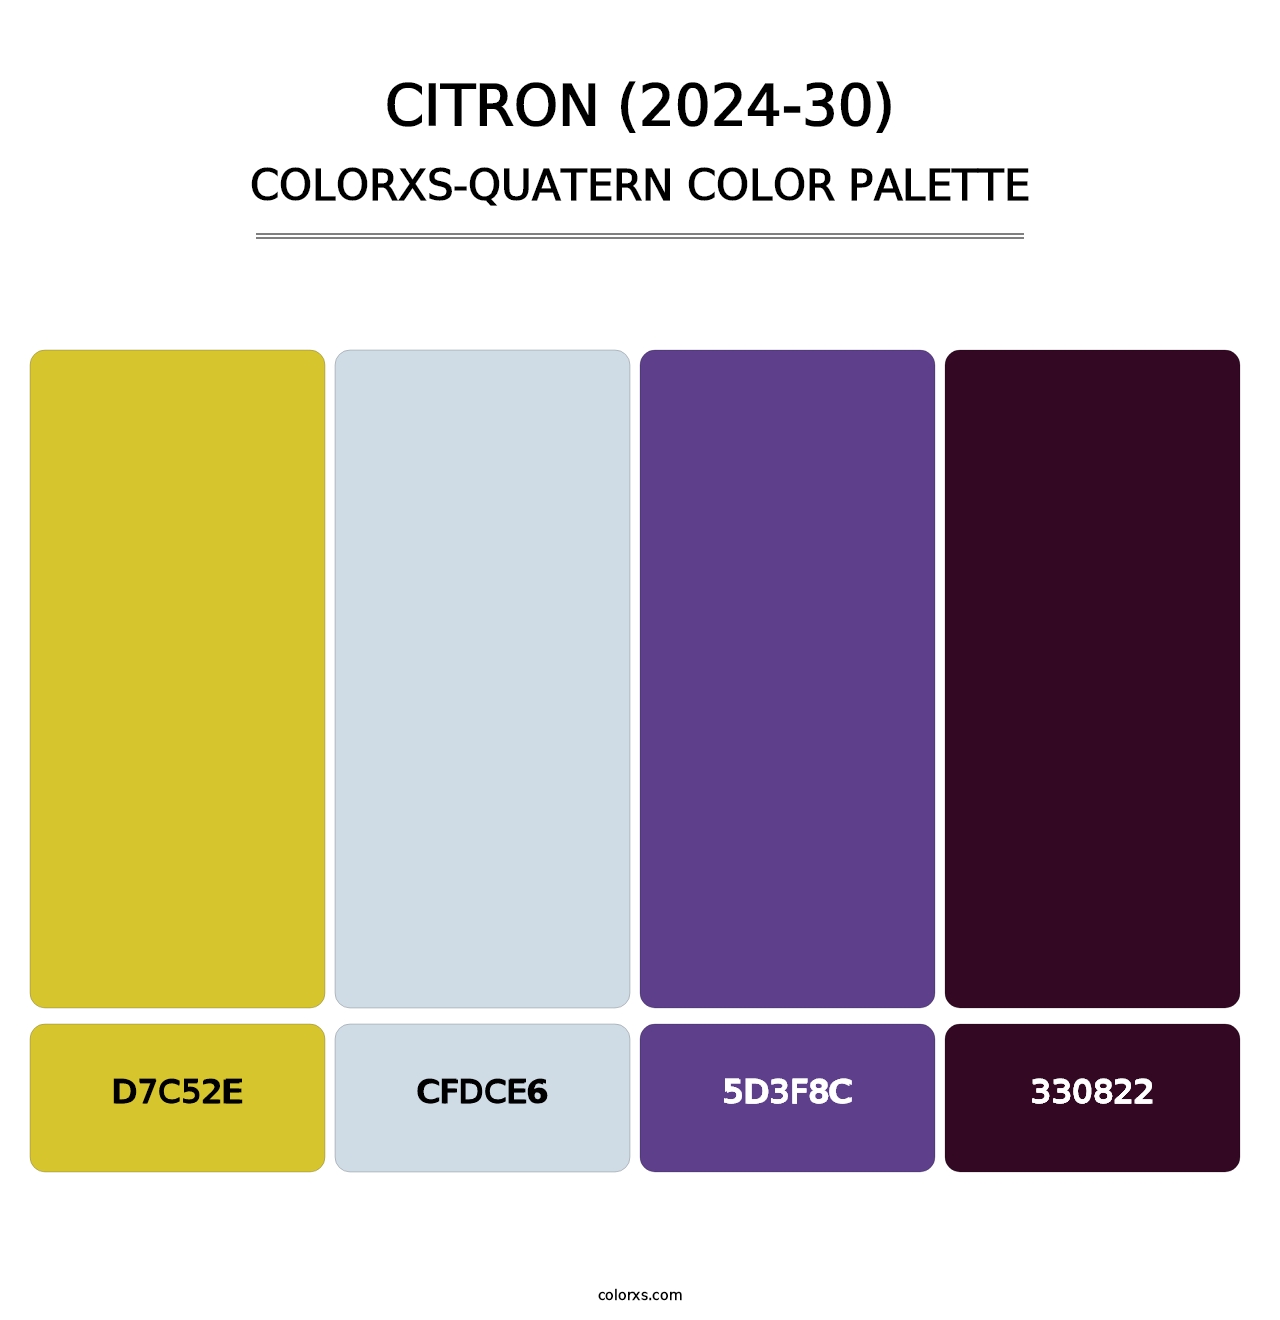 Citron (2024-30) - Colorxs Quatern Palette